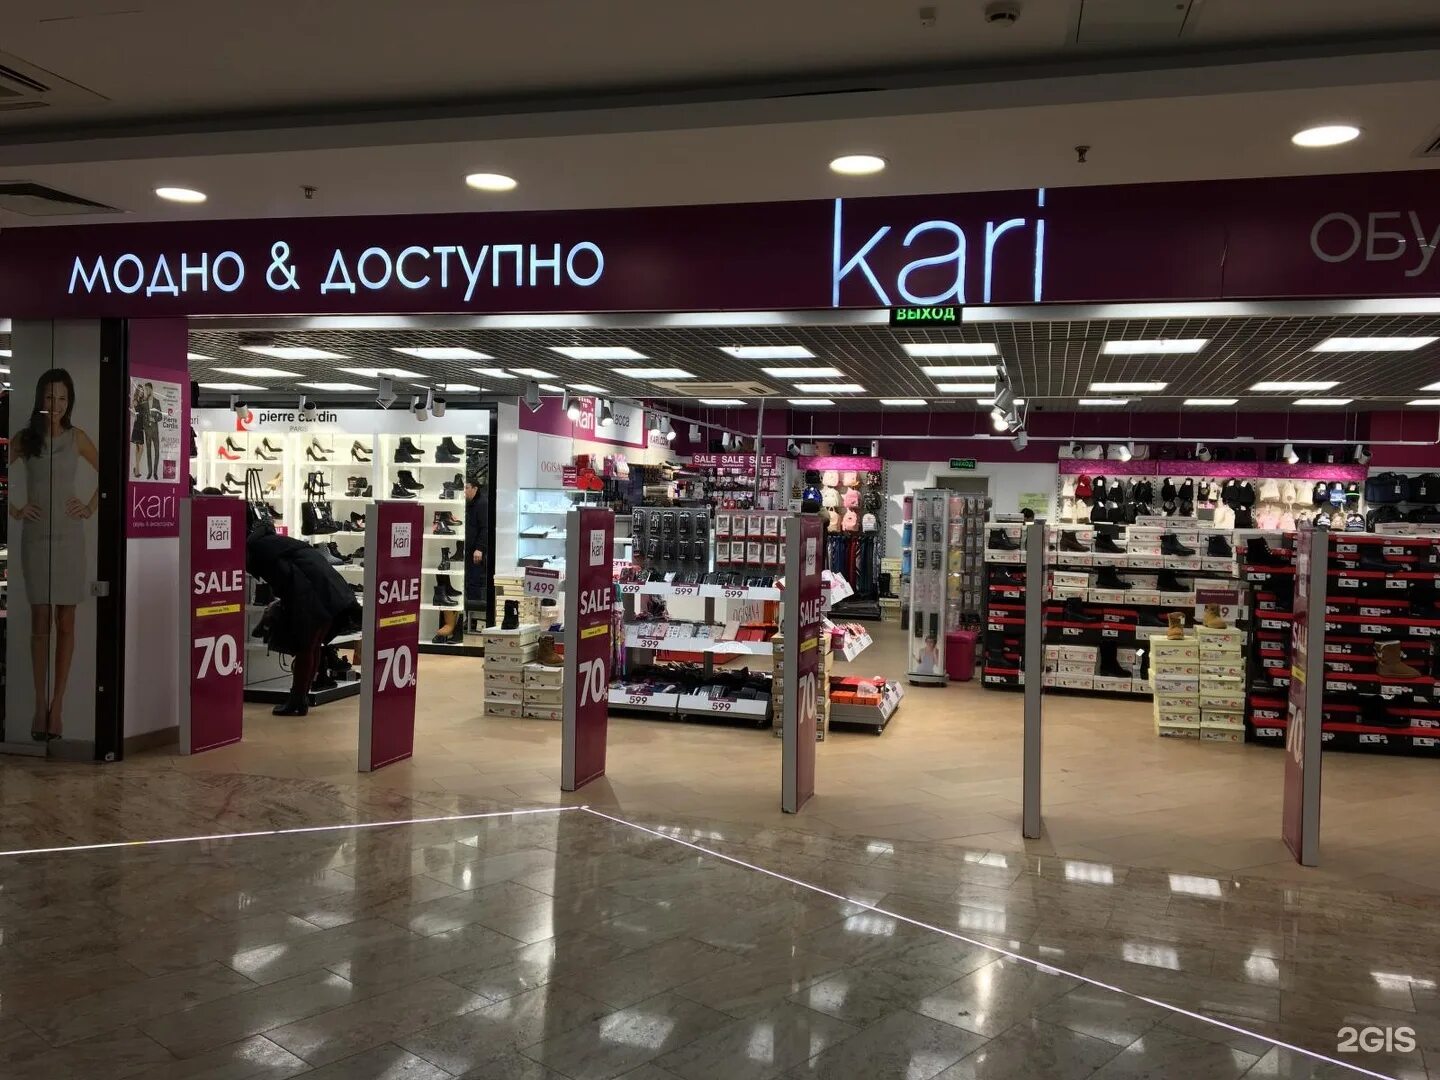 Кари магазины в москве на карте. Магазин кари. Кари самый большой магазин. Магазин Kari обувь. Kari аксессуары.